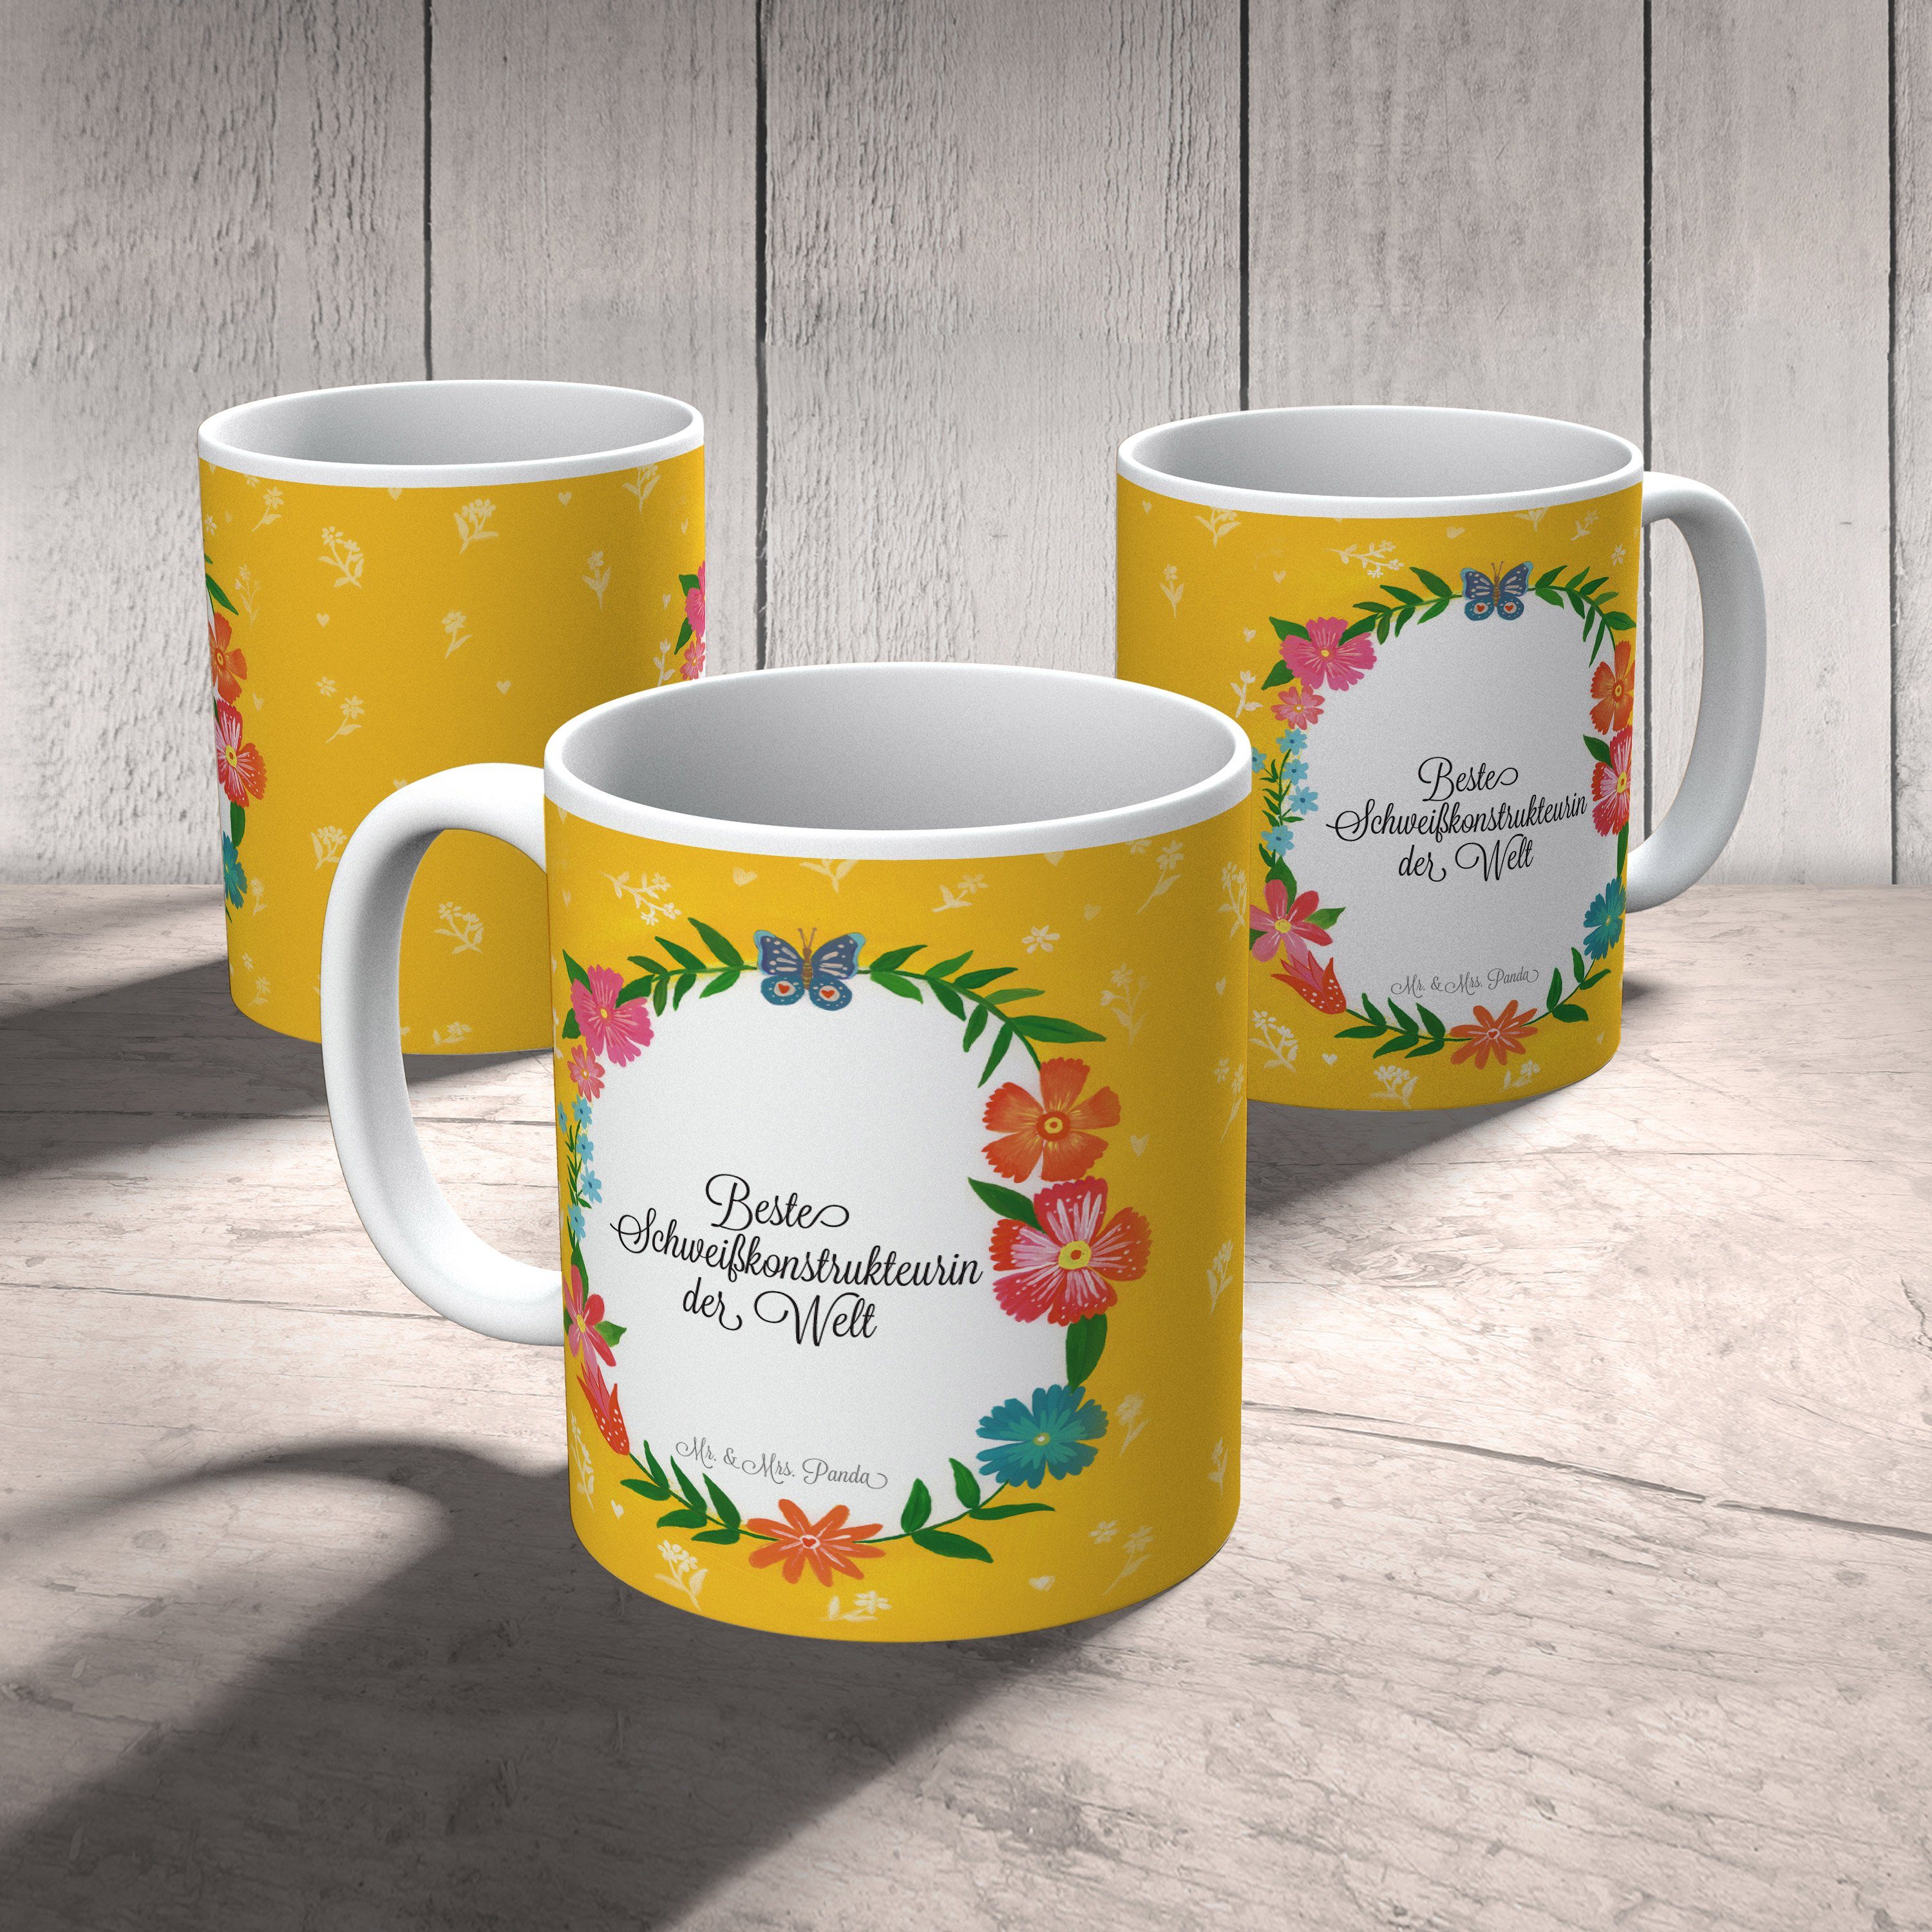 Keramik Mrs. - Geschenk, Schweißkonstrukteurin Kaffeebecher, Mr. & Tasse Panda Berufsausbi, Abschied,